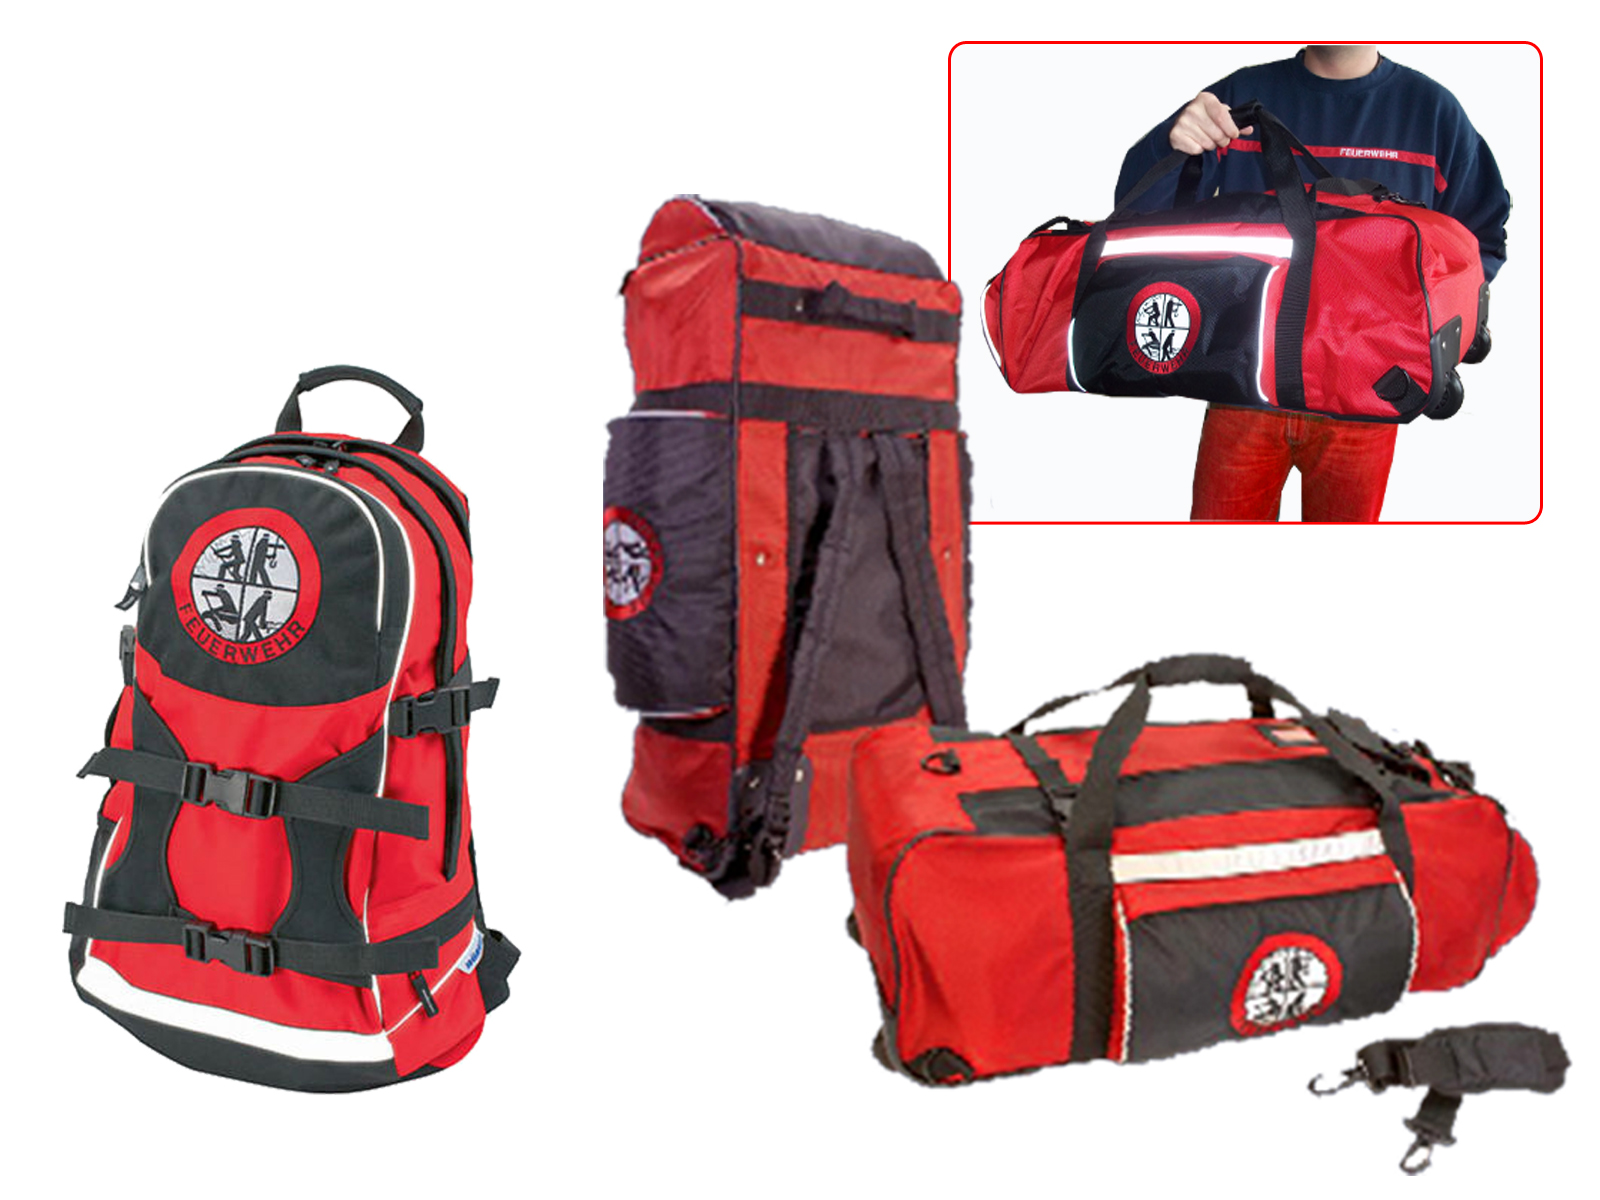 Feuerwehrbekleidungstaschen und Bekleidungstaschen für